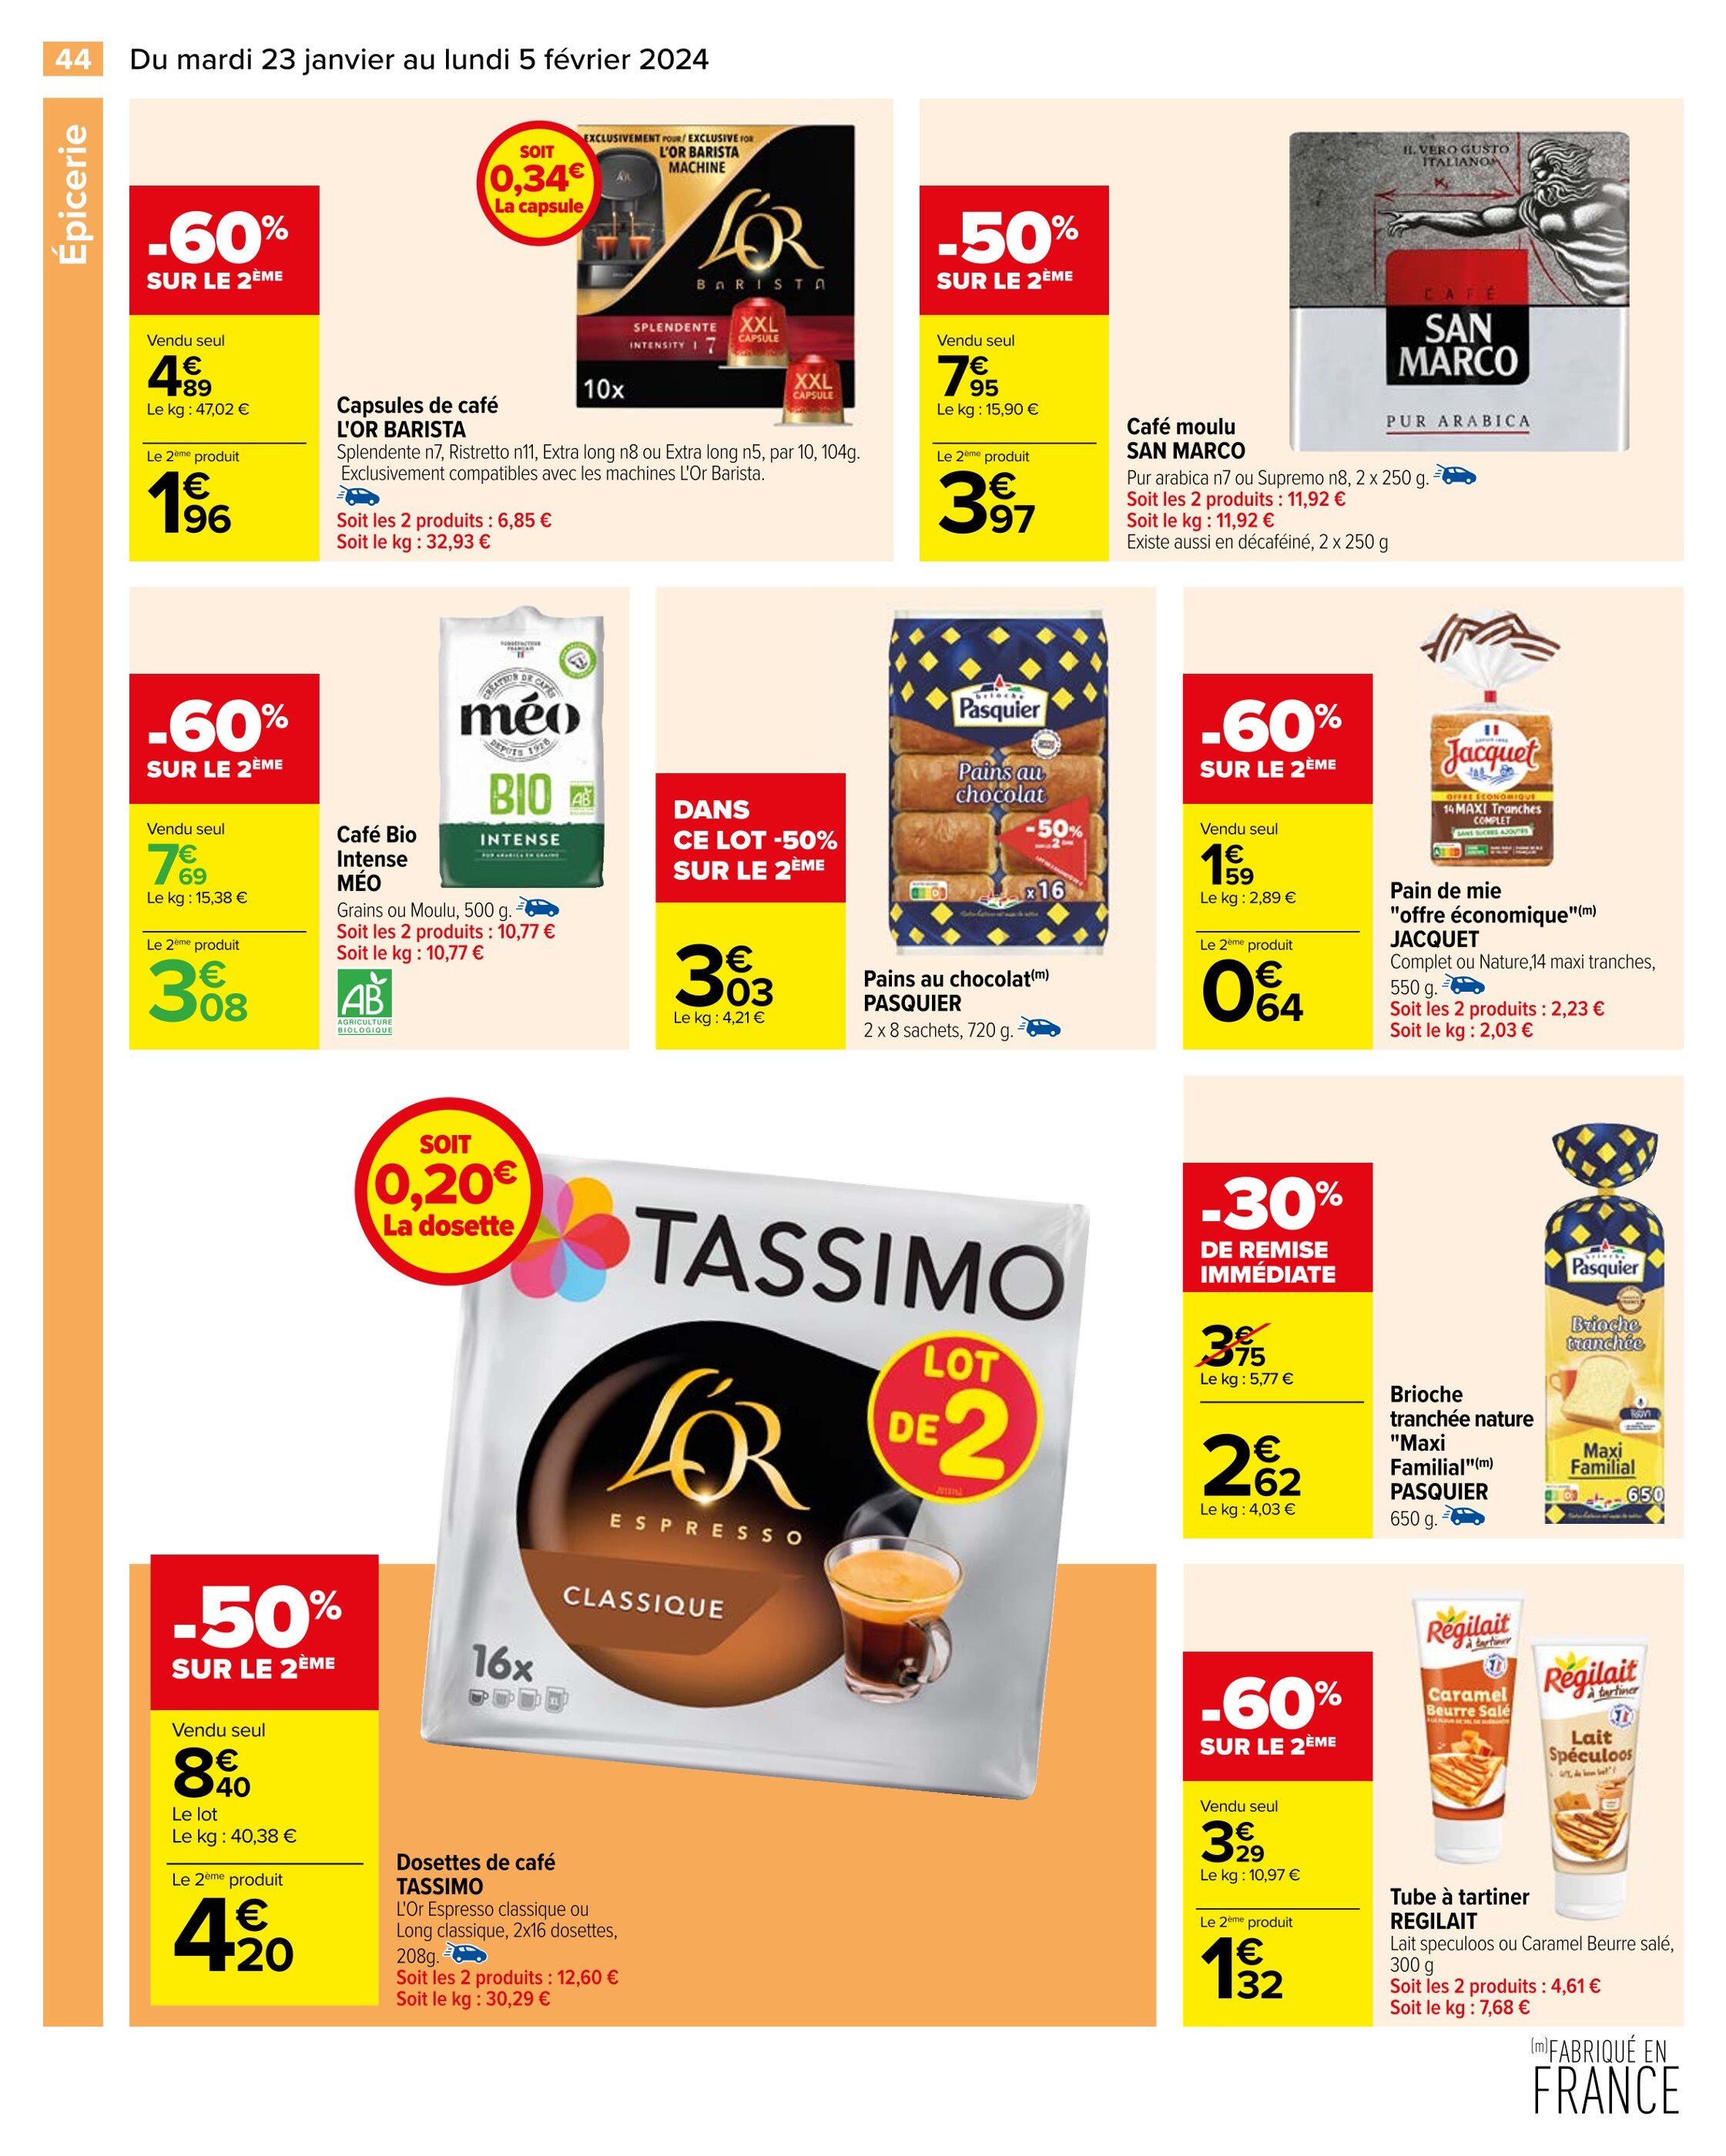 Promo L'or dosettes de café tassimo chez ALDI